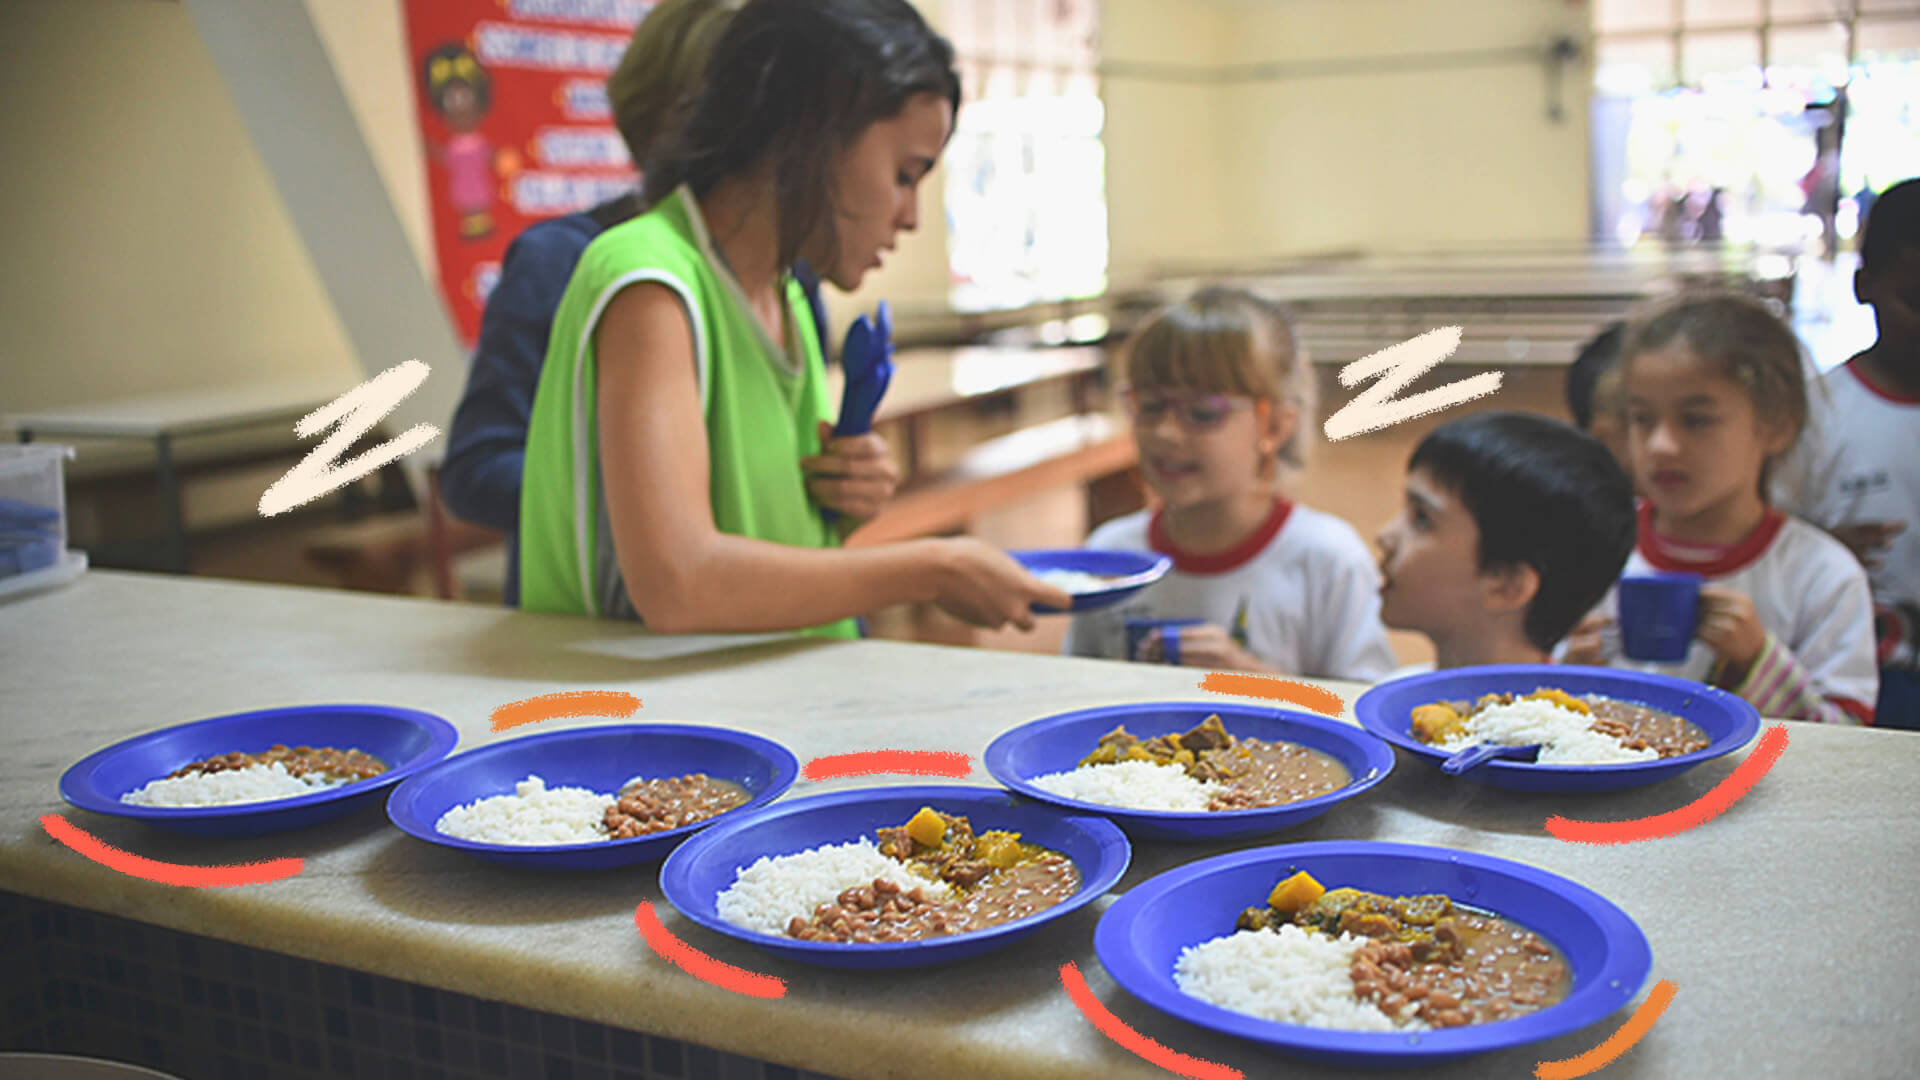 A imagem mostra uma merendeira oferecendo pratos de arroz e feijão a três crianças, que estão atrás de um balcão.